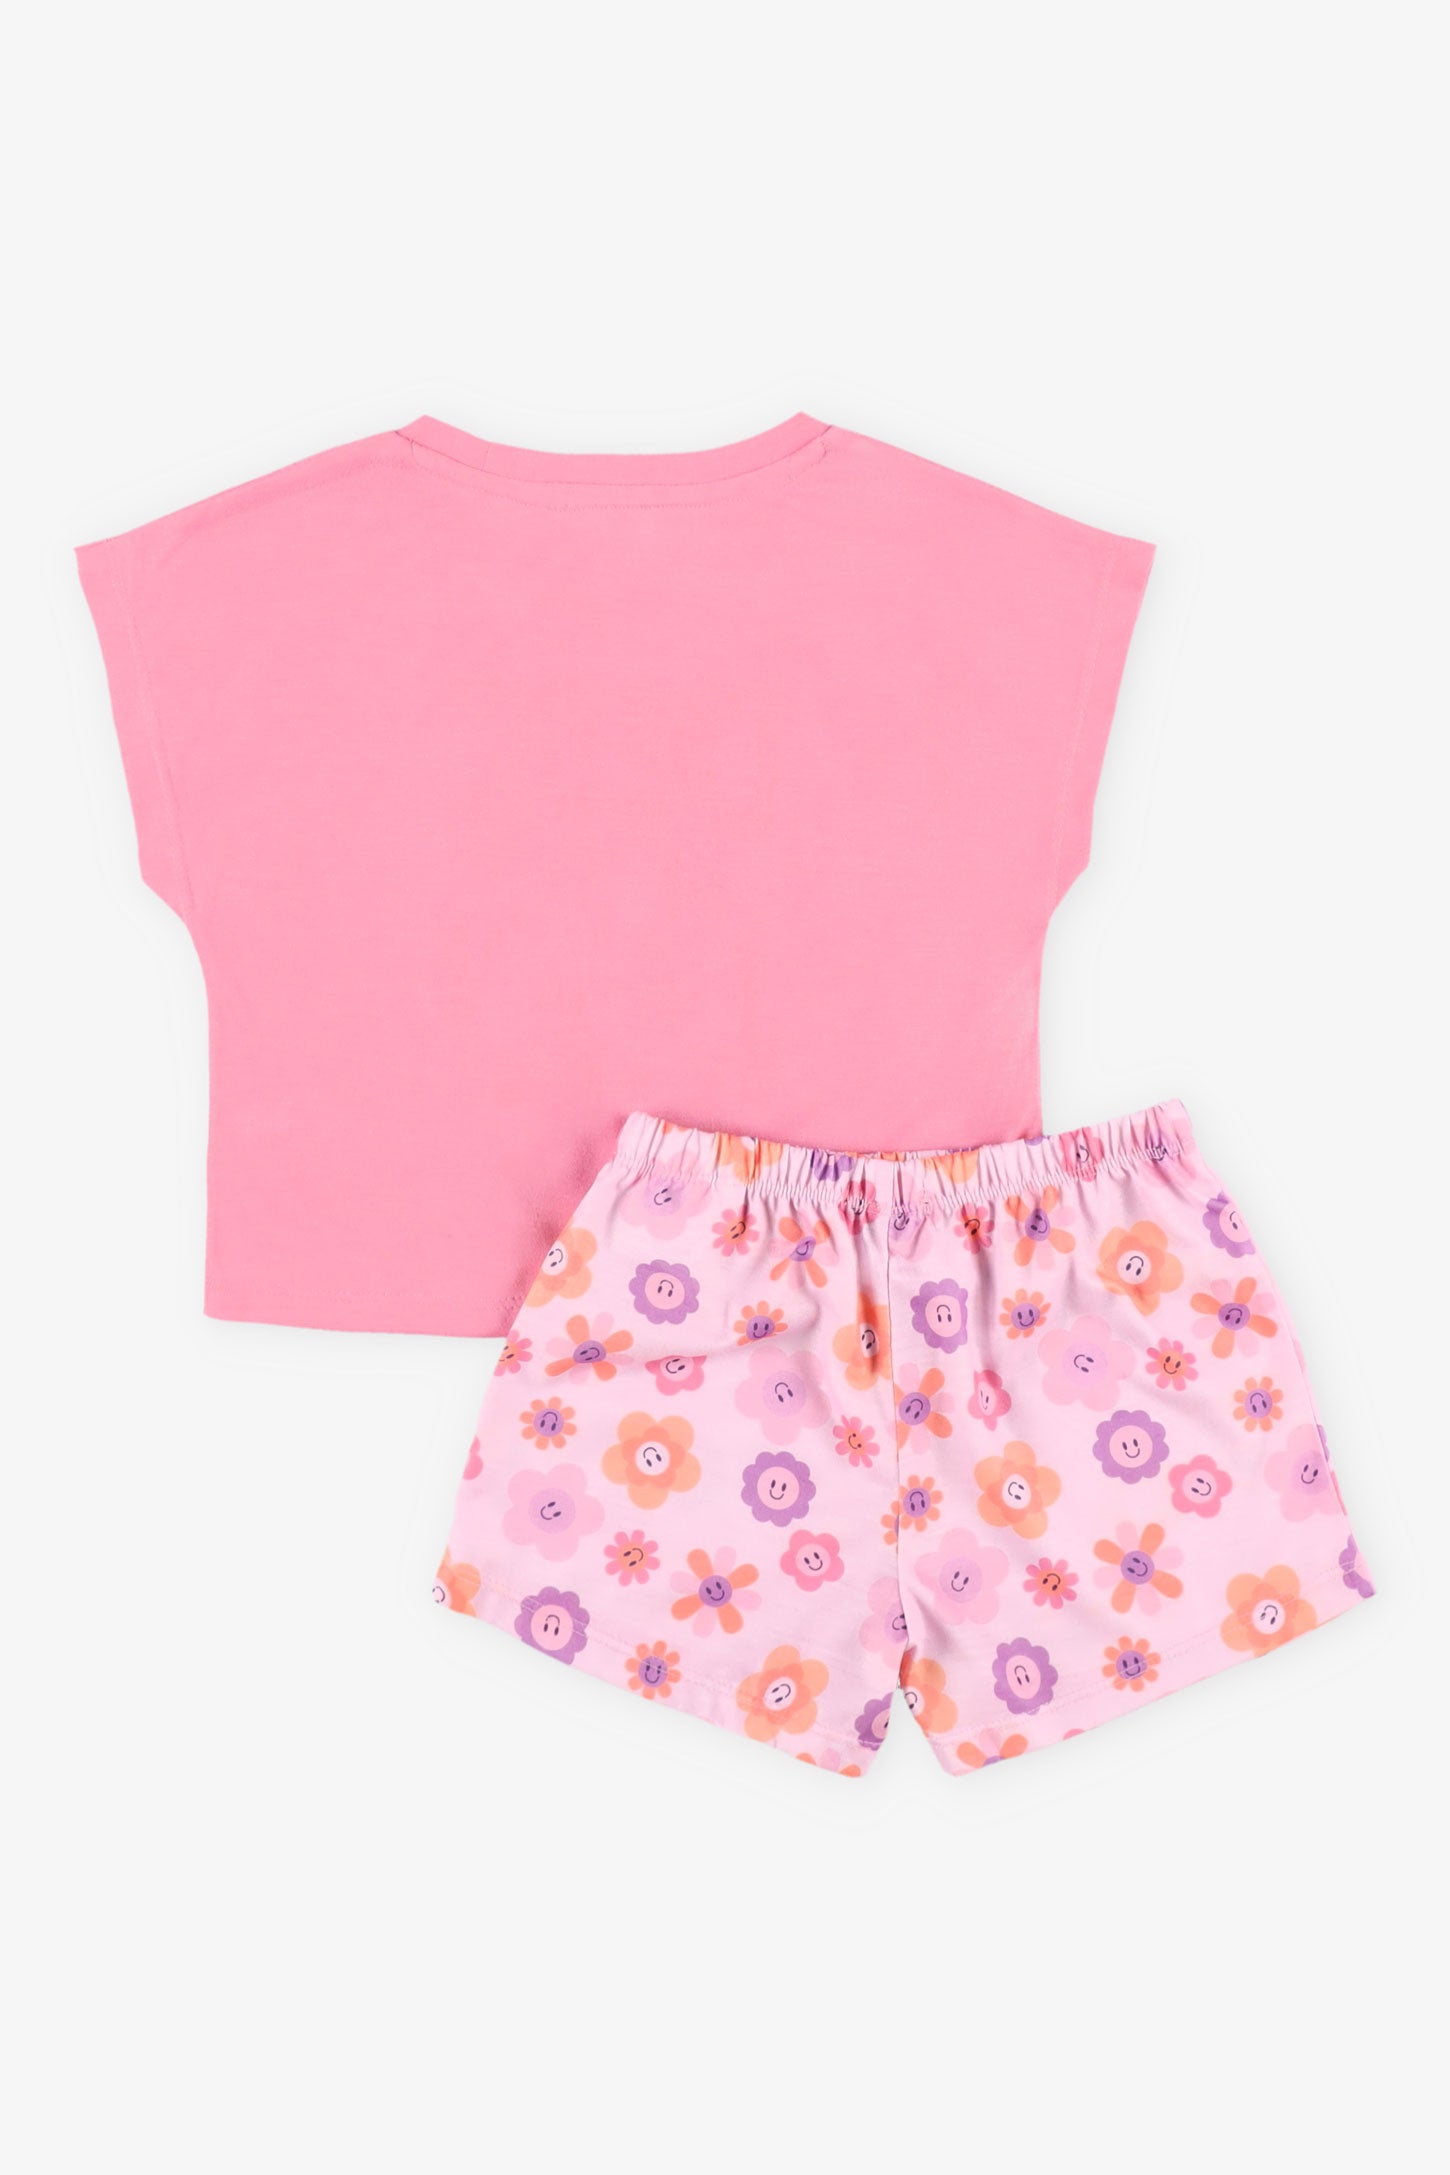 Pyjama 2-pièces, 2/35$ - Enfant fille && ROSE